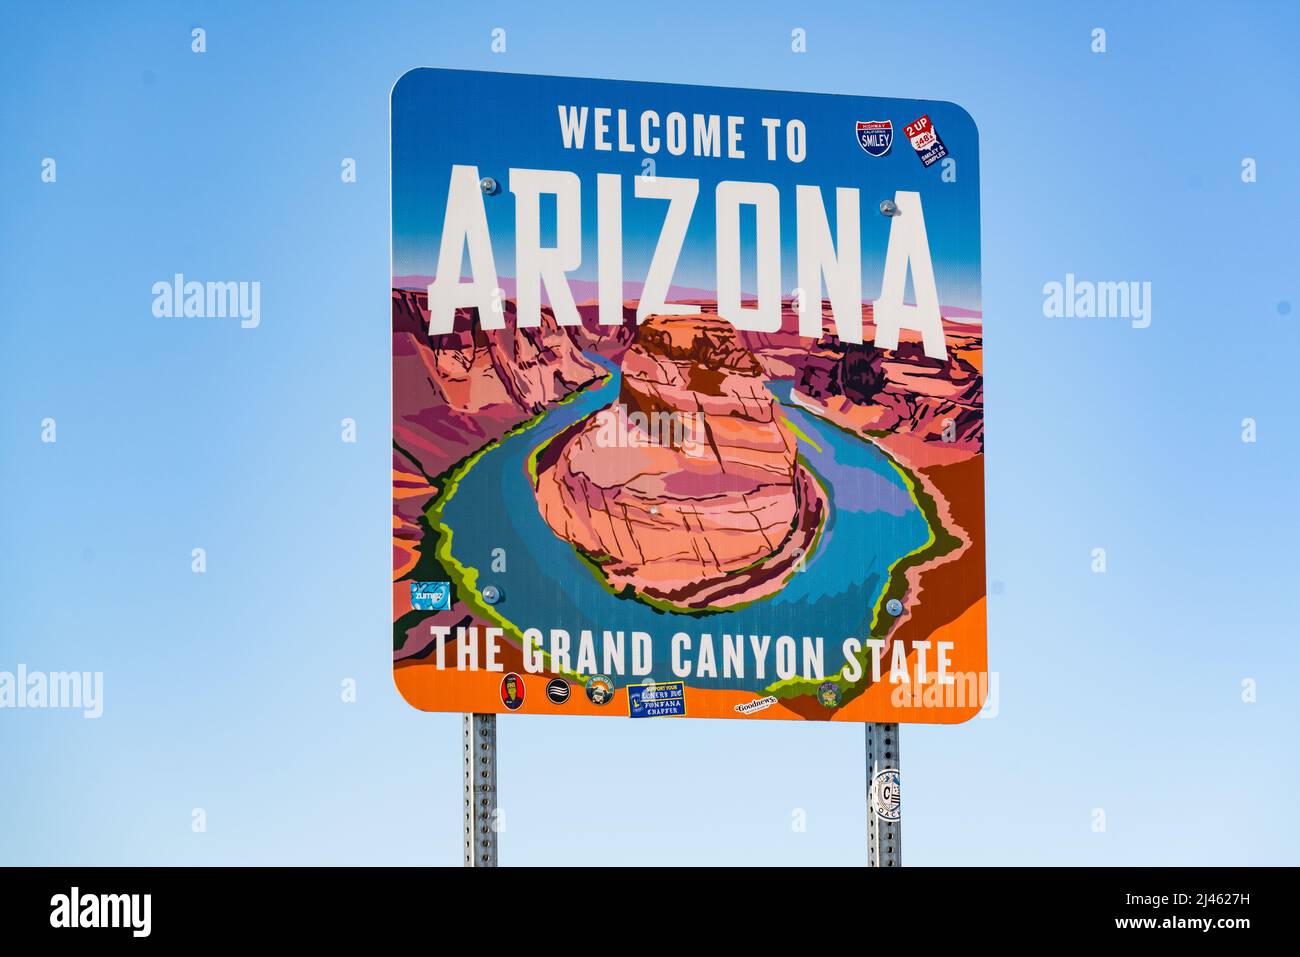 Teec Nos Pos, AZ - Octubre 10,2021: Bienvenido a la señal de Arizona a lo largo de la carretera en la frontera estatal en Teec Nos Pos, Arizona Foto de stock